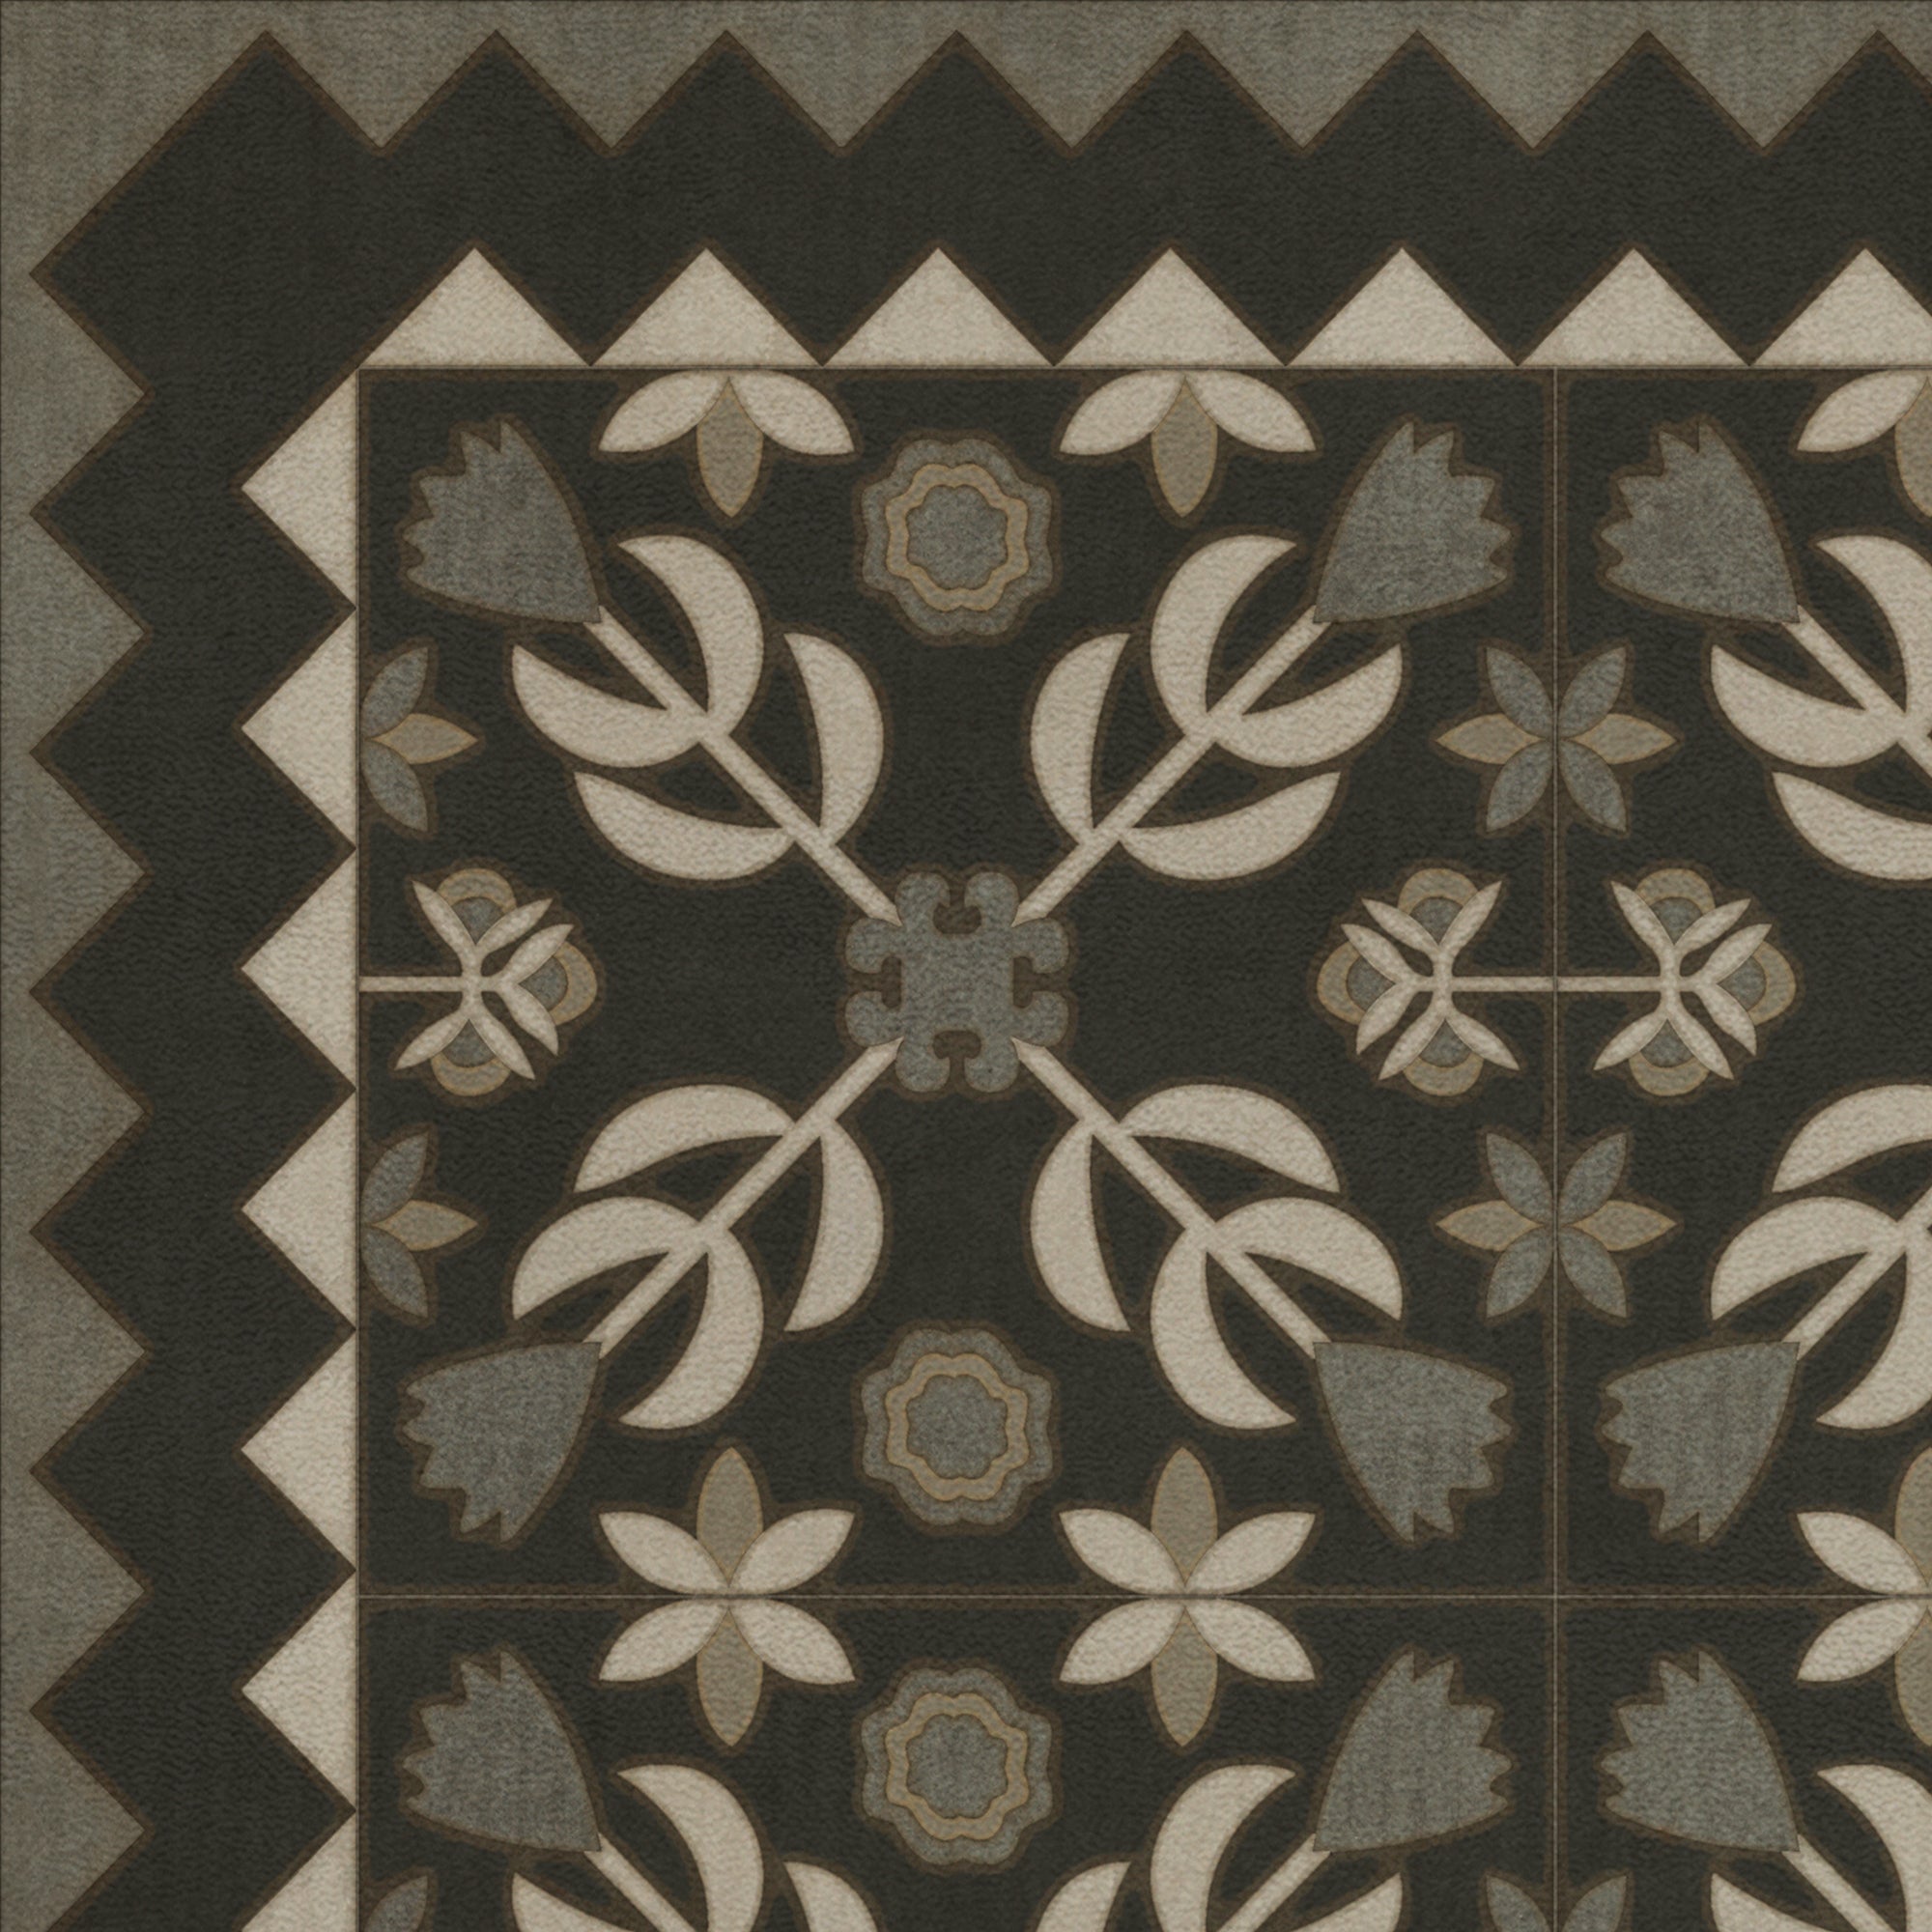 Folk Art Museum Floral Quilt Awake At Night Vinyl Floor Cloth